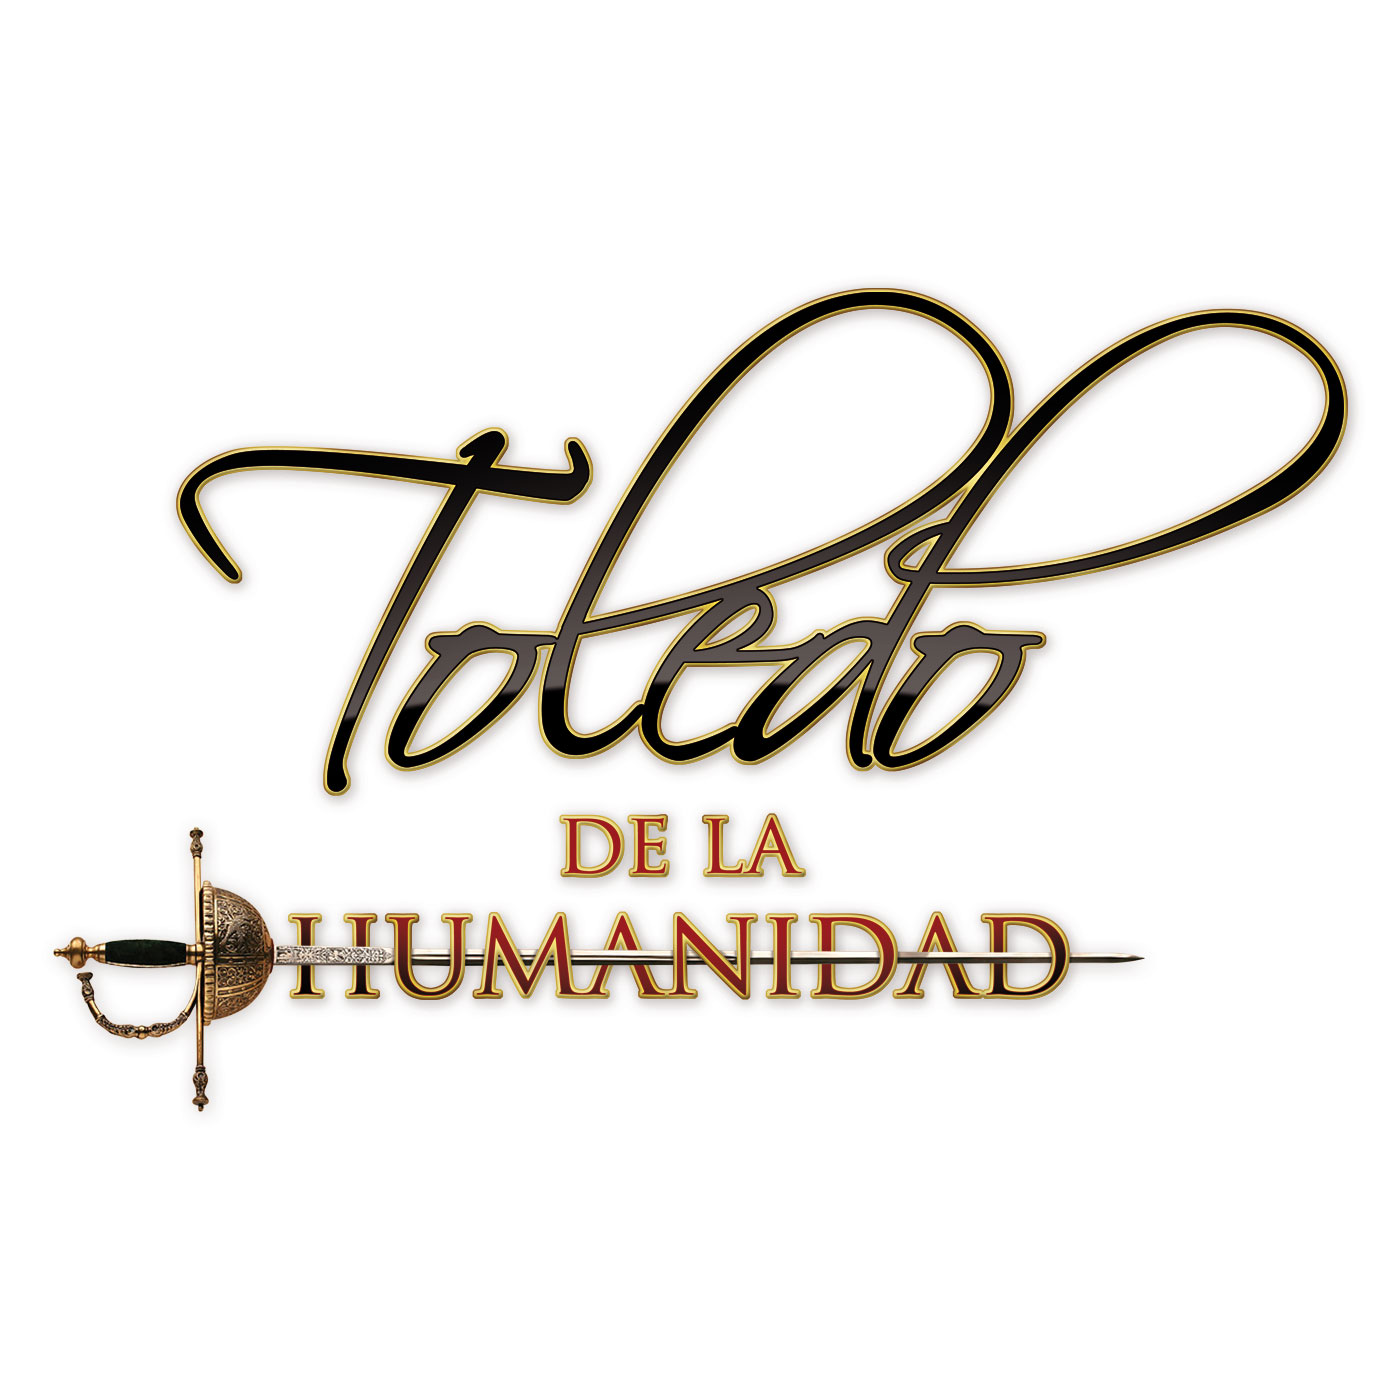 Toledo de la Humanidad